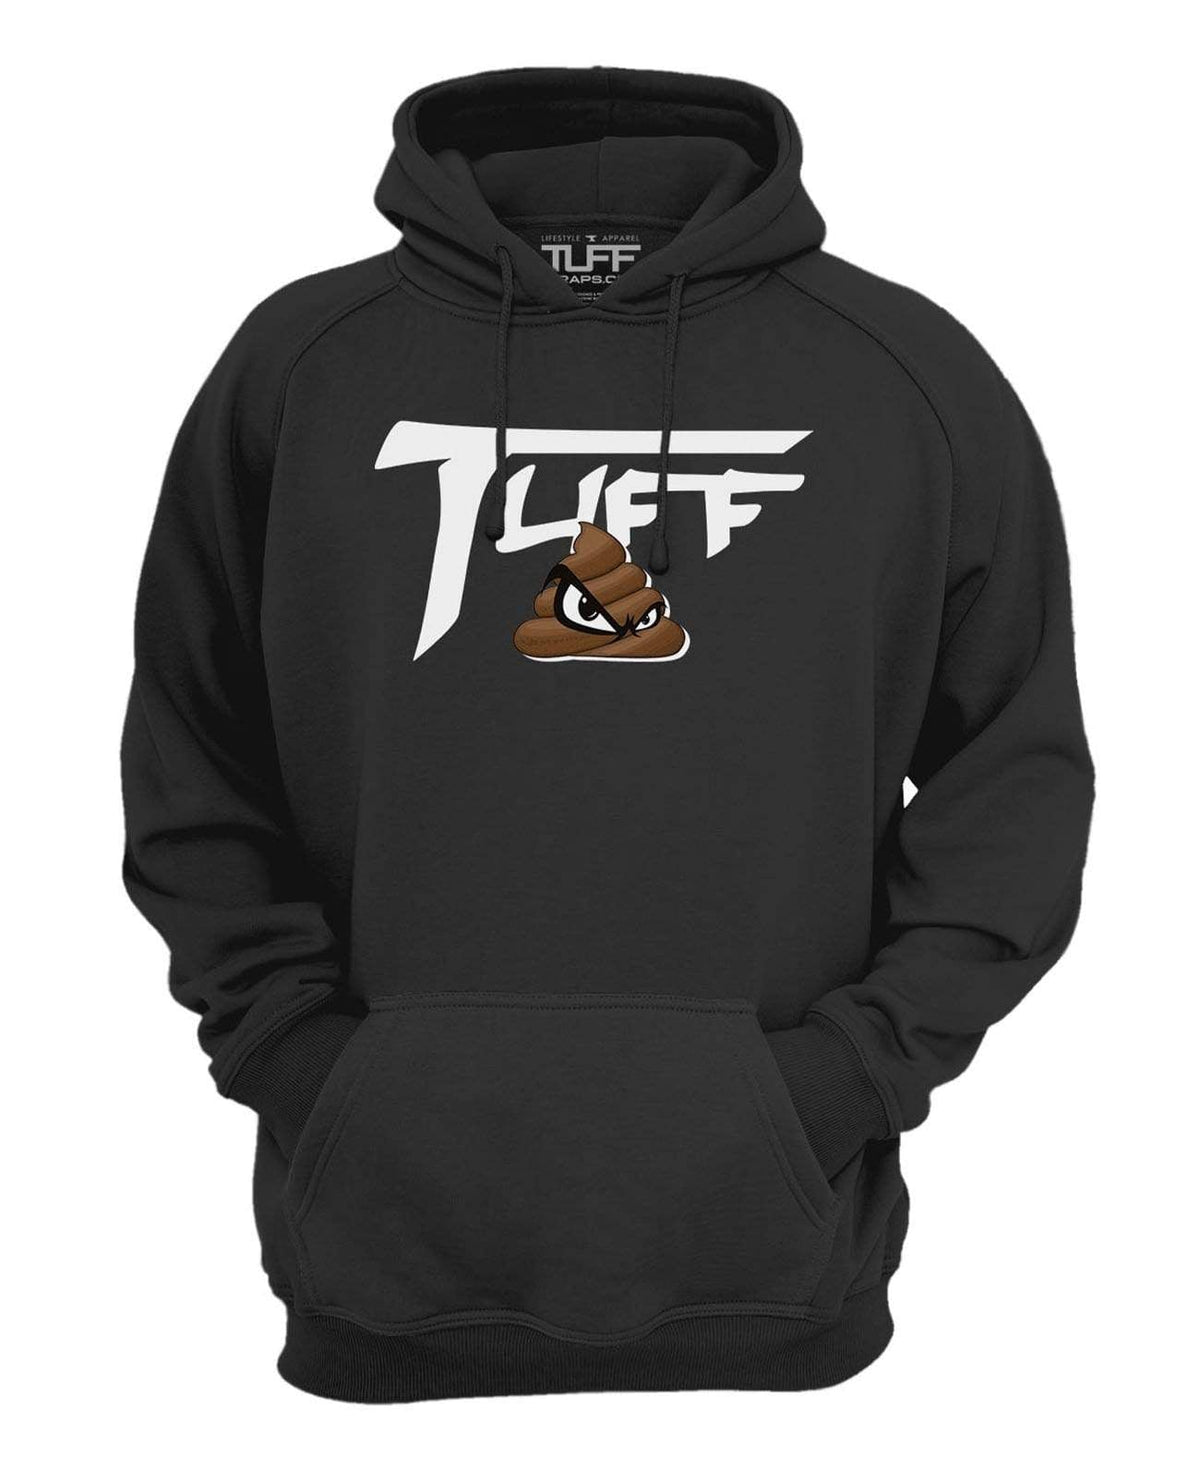 TUFF SH*T Hooded Sweatshirt XS / Black TuffWraps.com